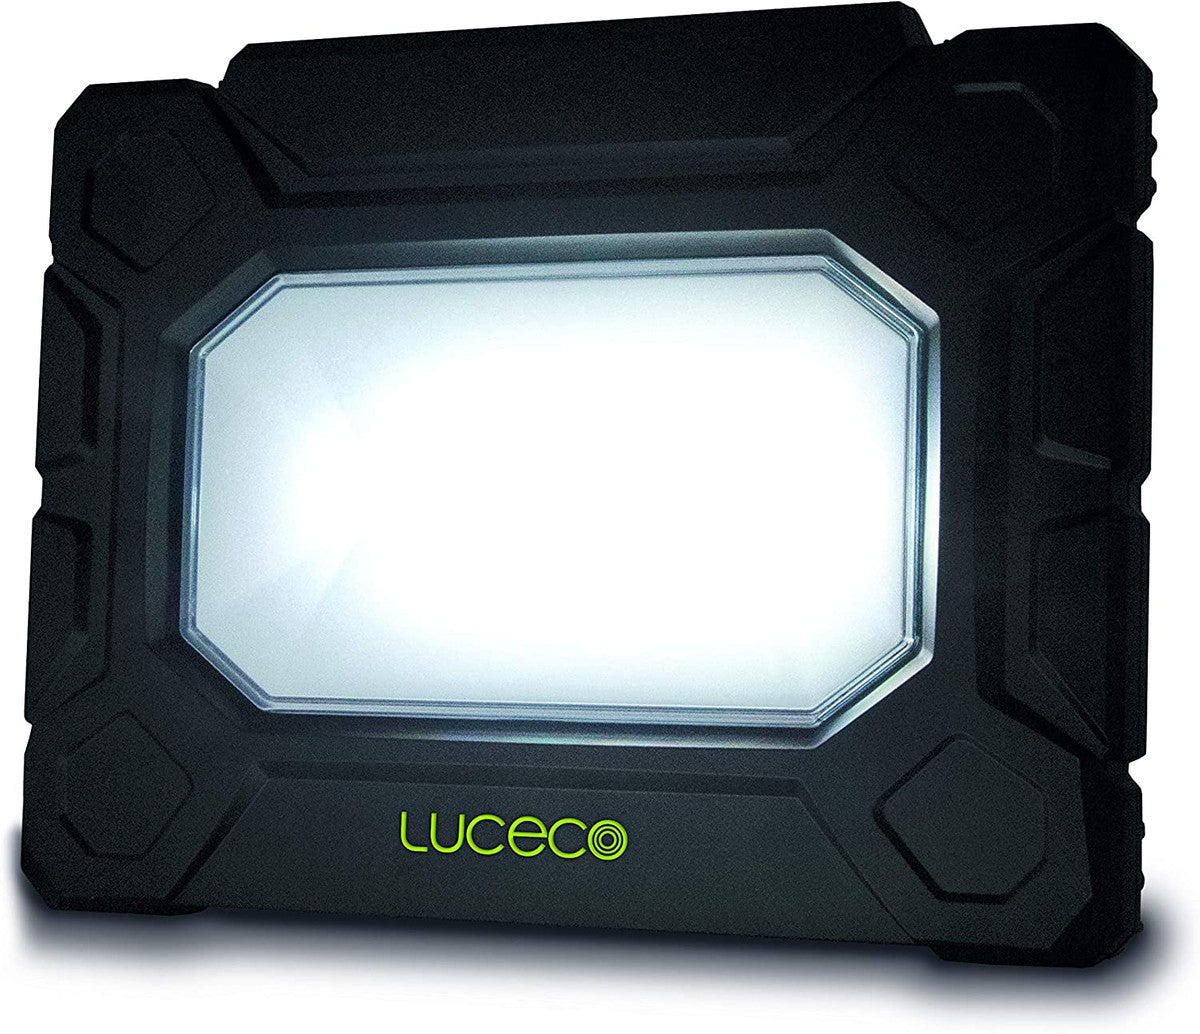 Luceco Hybrid Arbeitsleuchte 5000 Lumen 
5200 Lumen,  2 Steckdosen, Anschlusskabel 5m, 
Metallgehäuse